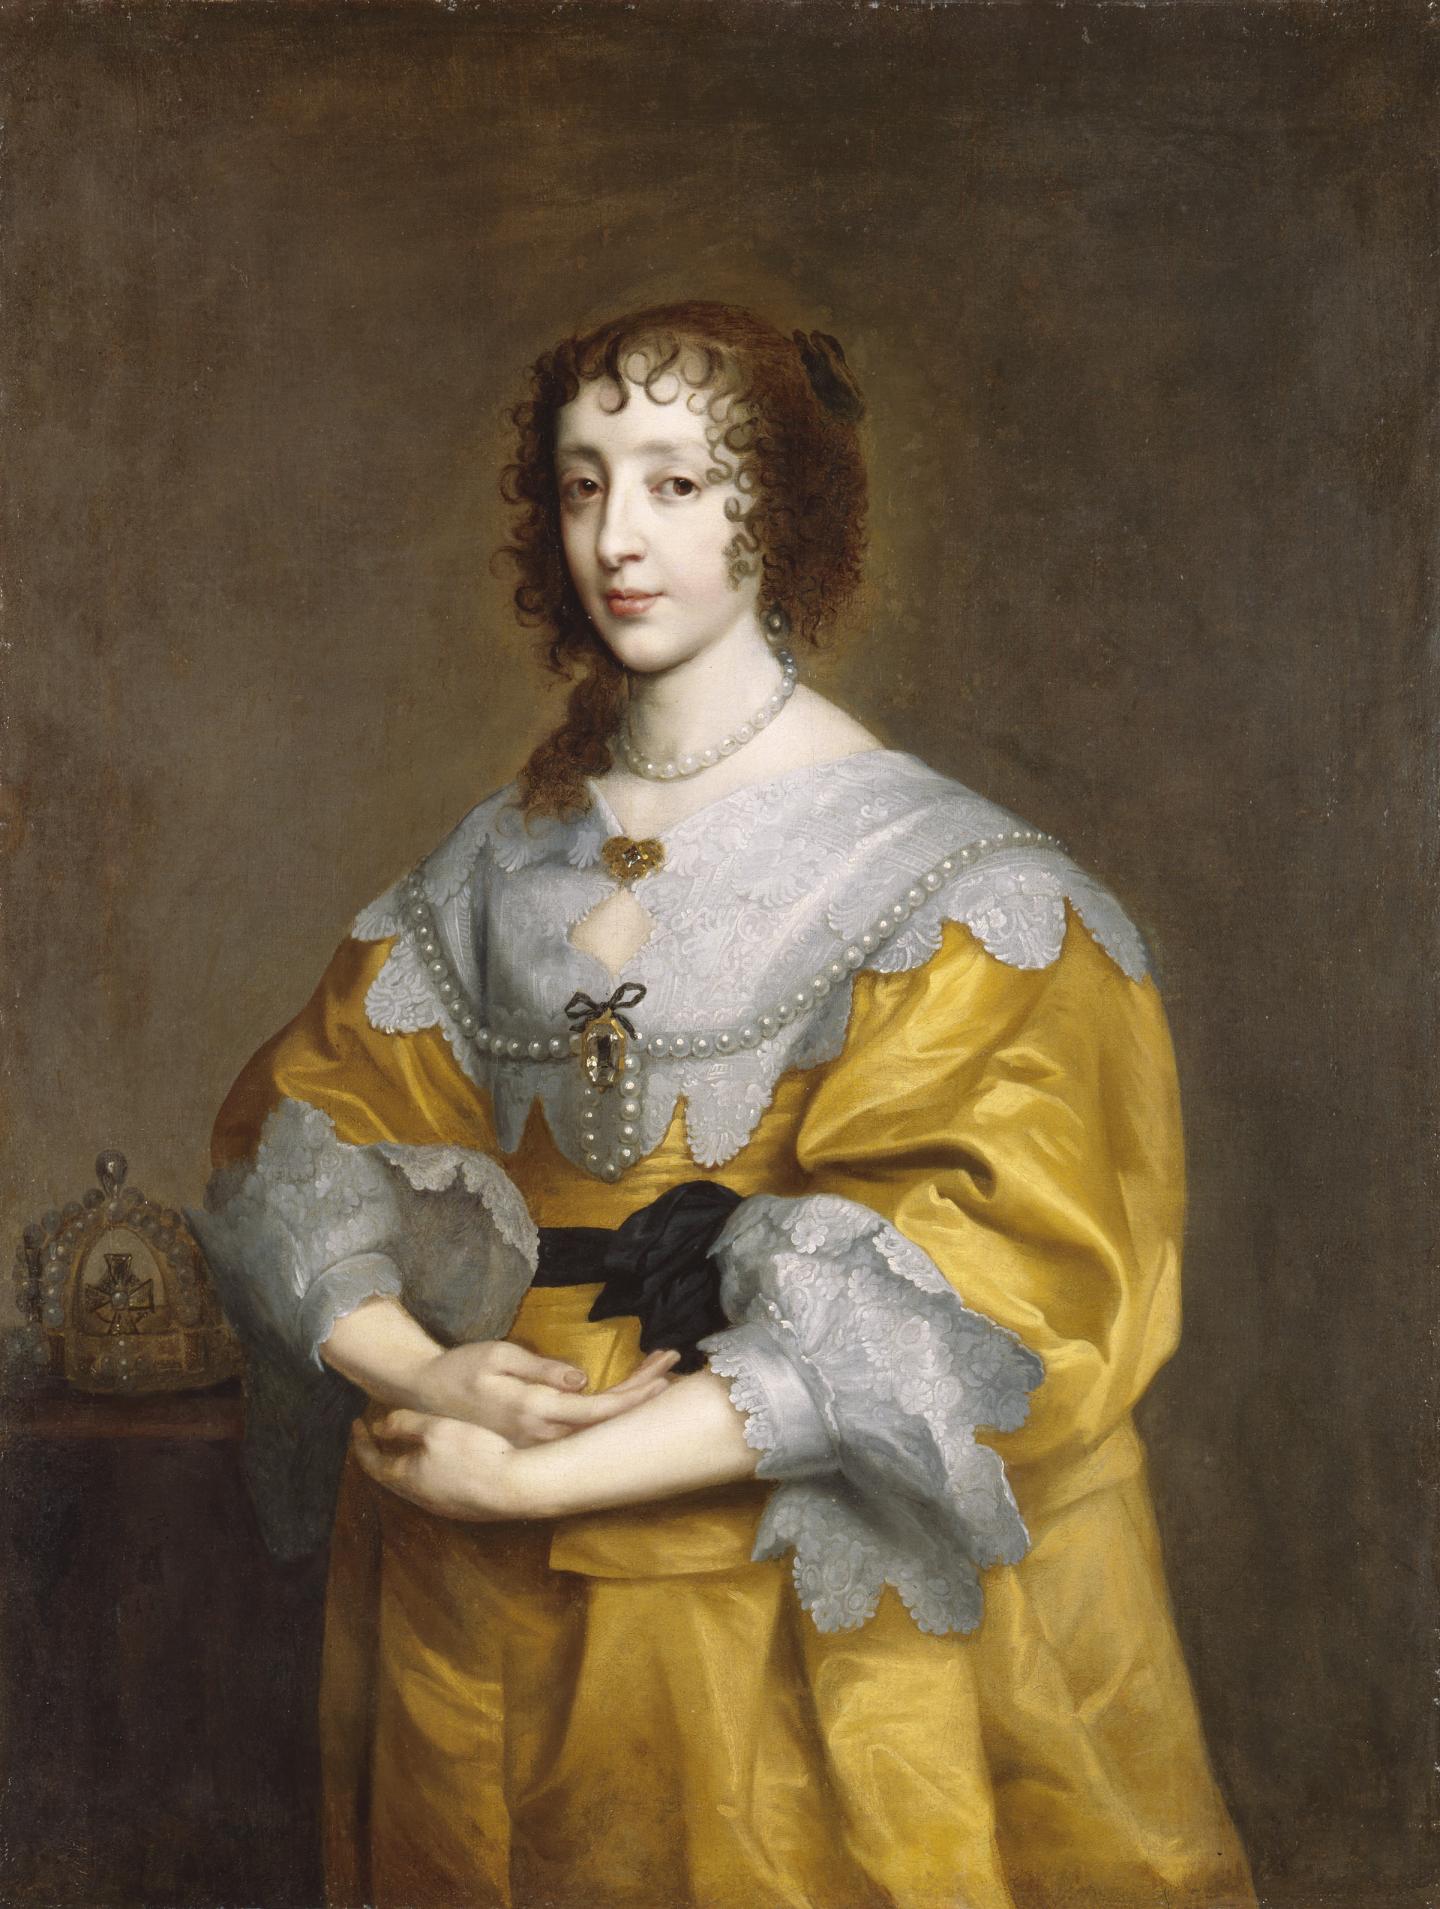 Henrietta Maria wears a golden dress